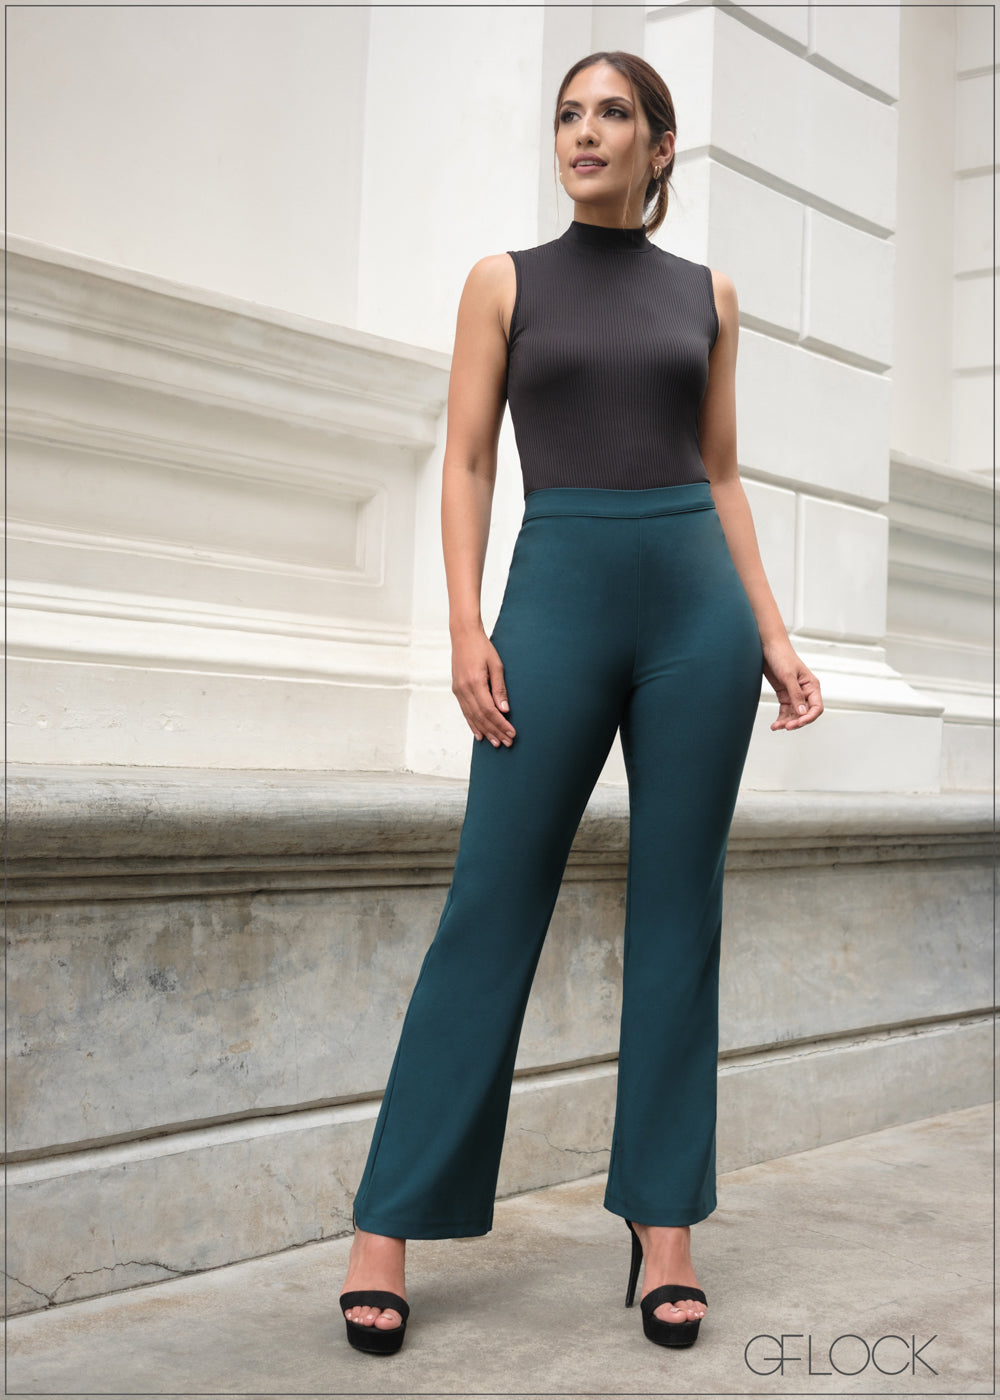 Boot Leg/Bootcut Women's Casual & Dress Pants | Dillard's